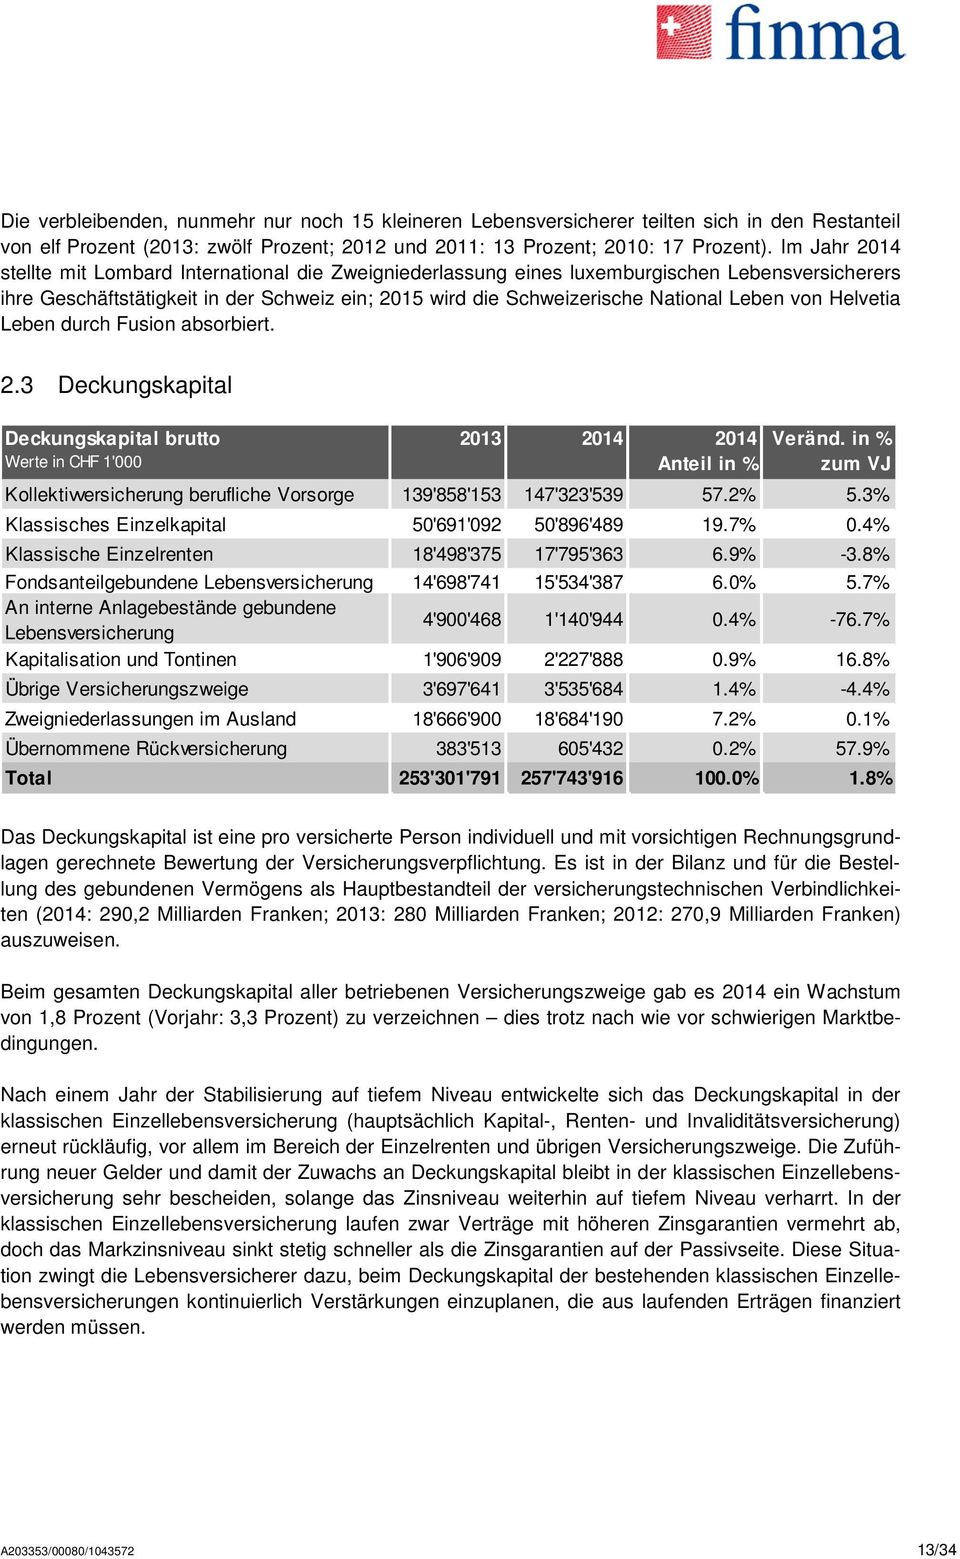 von Helvetia Leben durch Fusion absorbiert. 2.3 Deckungskapital Deckungskapital brutto Werte in CHF 1'000 2013 2014 2014 Anteil in % Veränd.